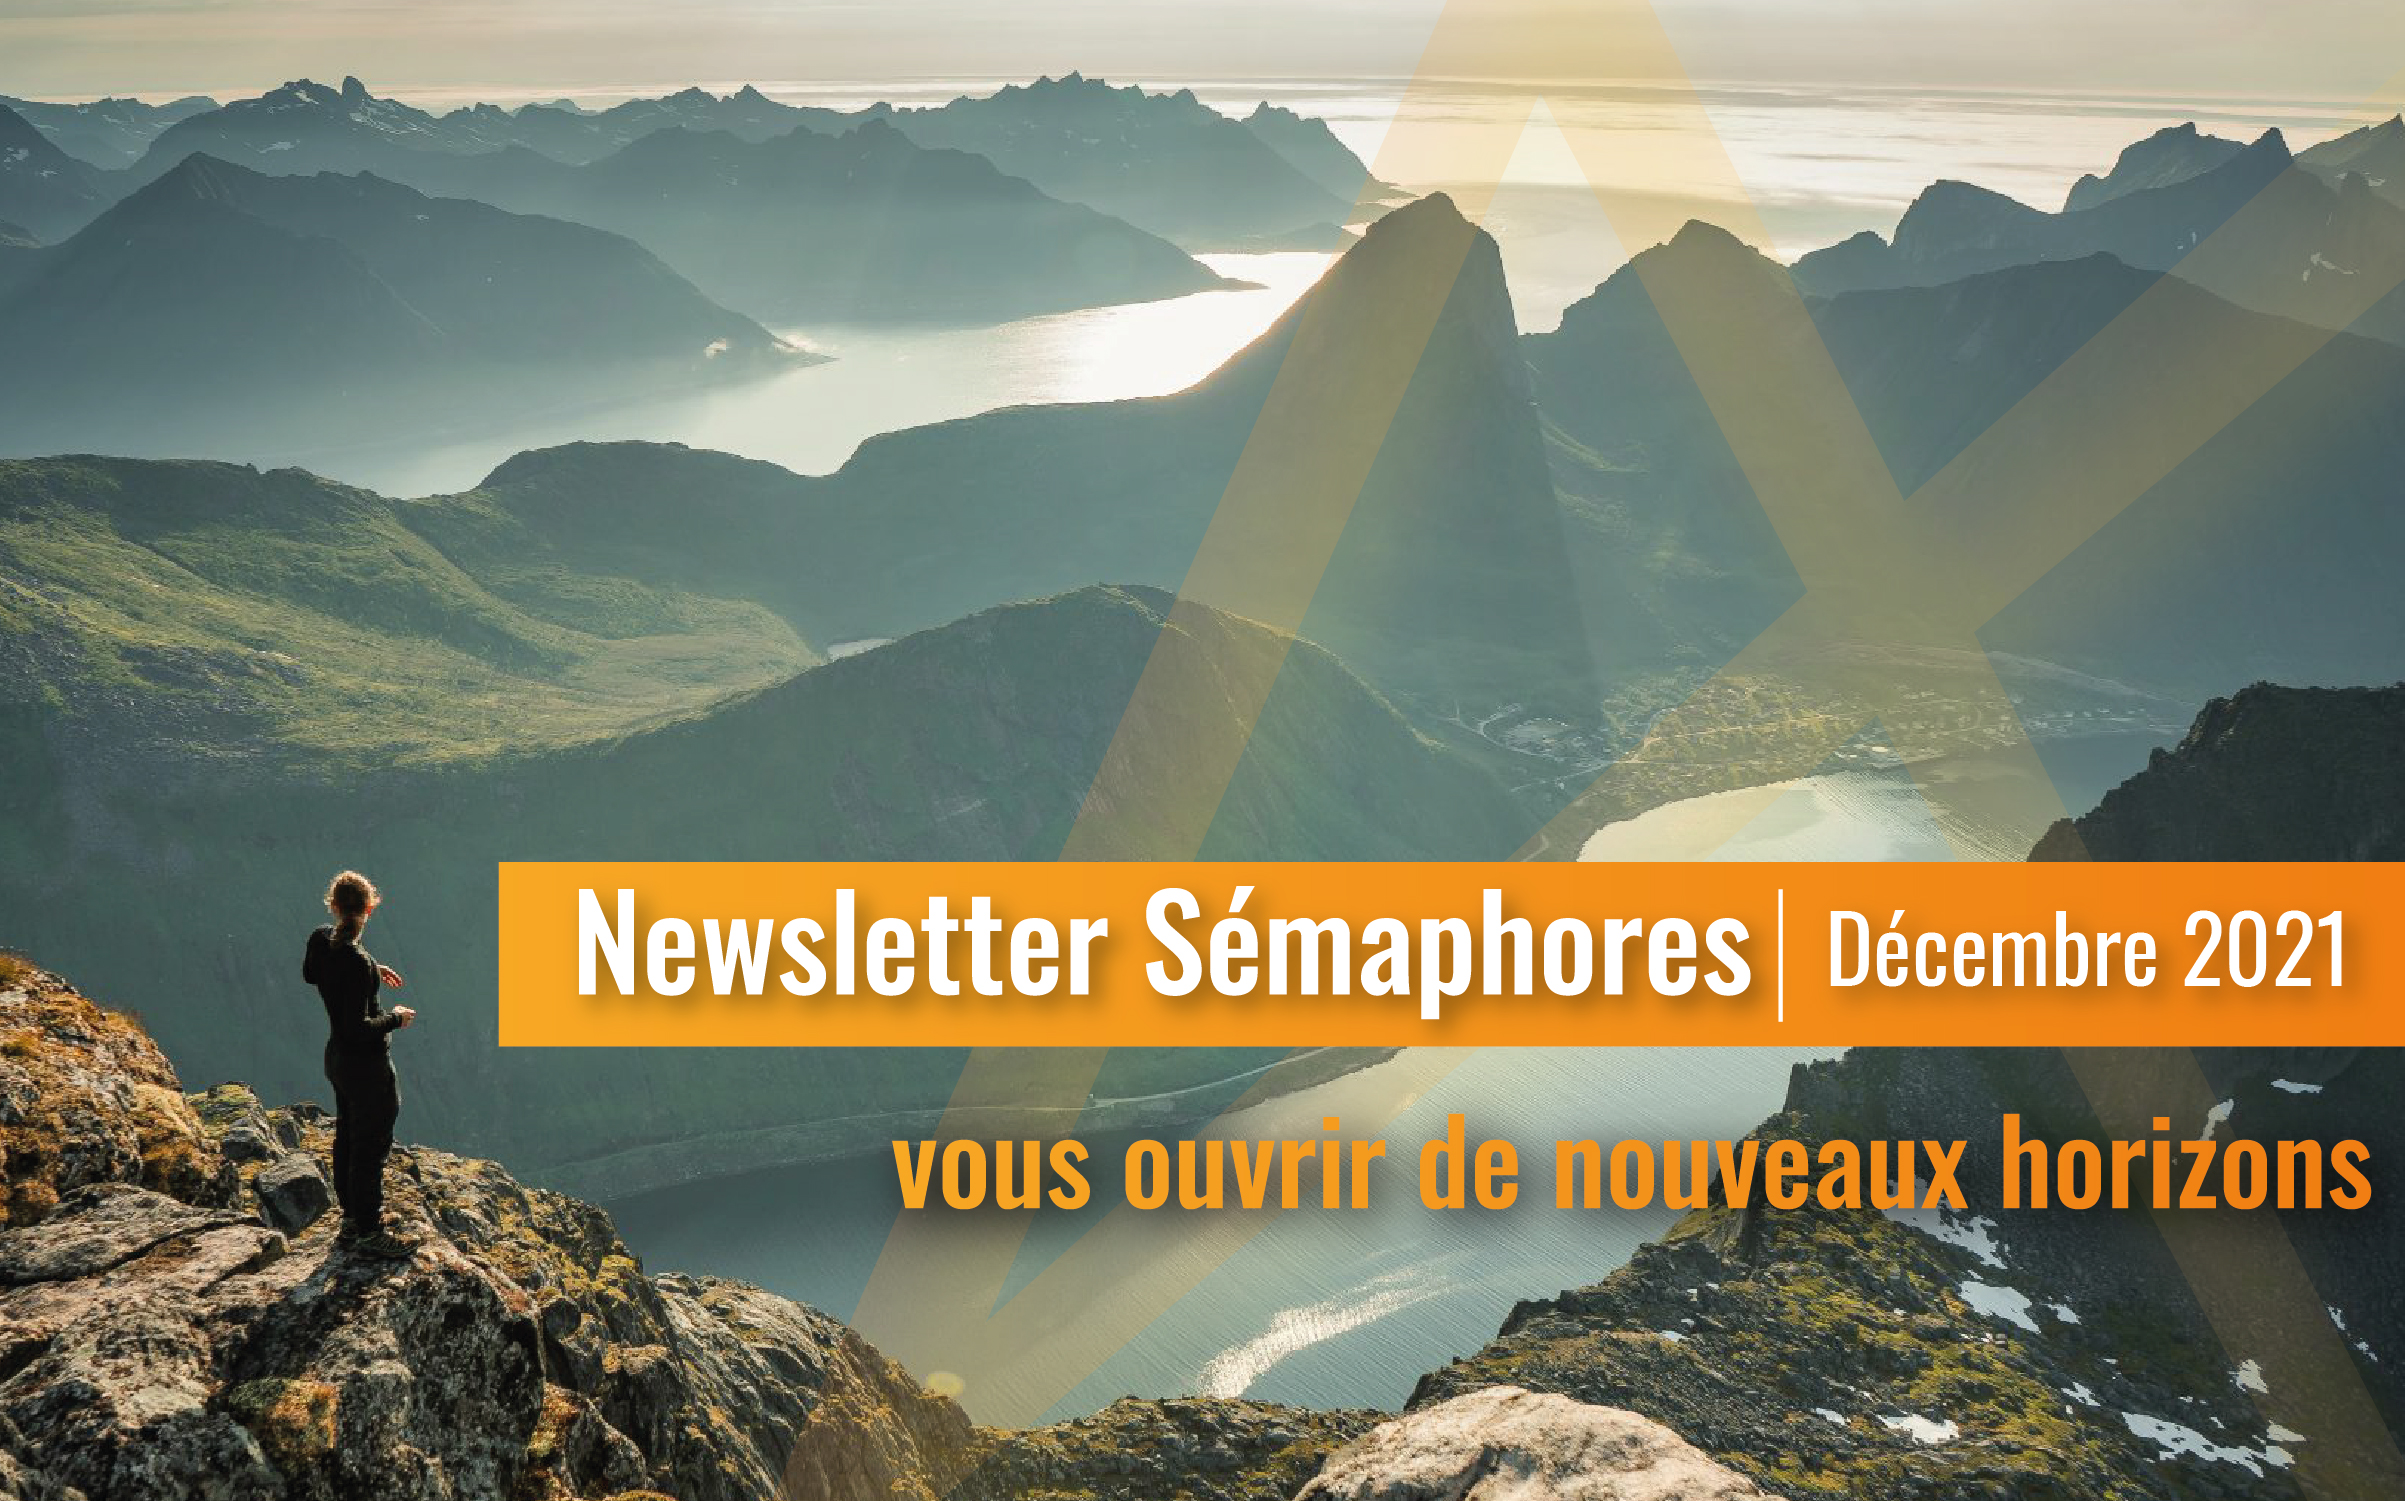 La newsletter Sémaphores - Décembre 2021